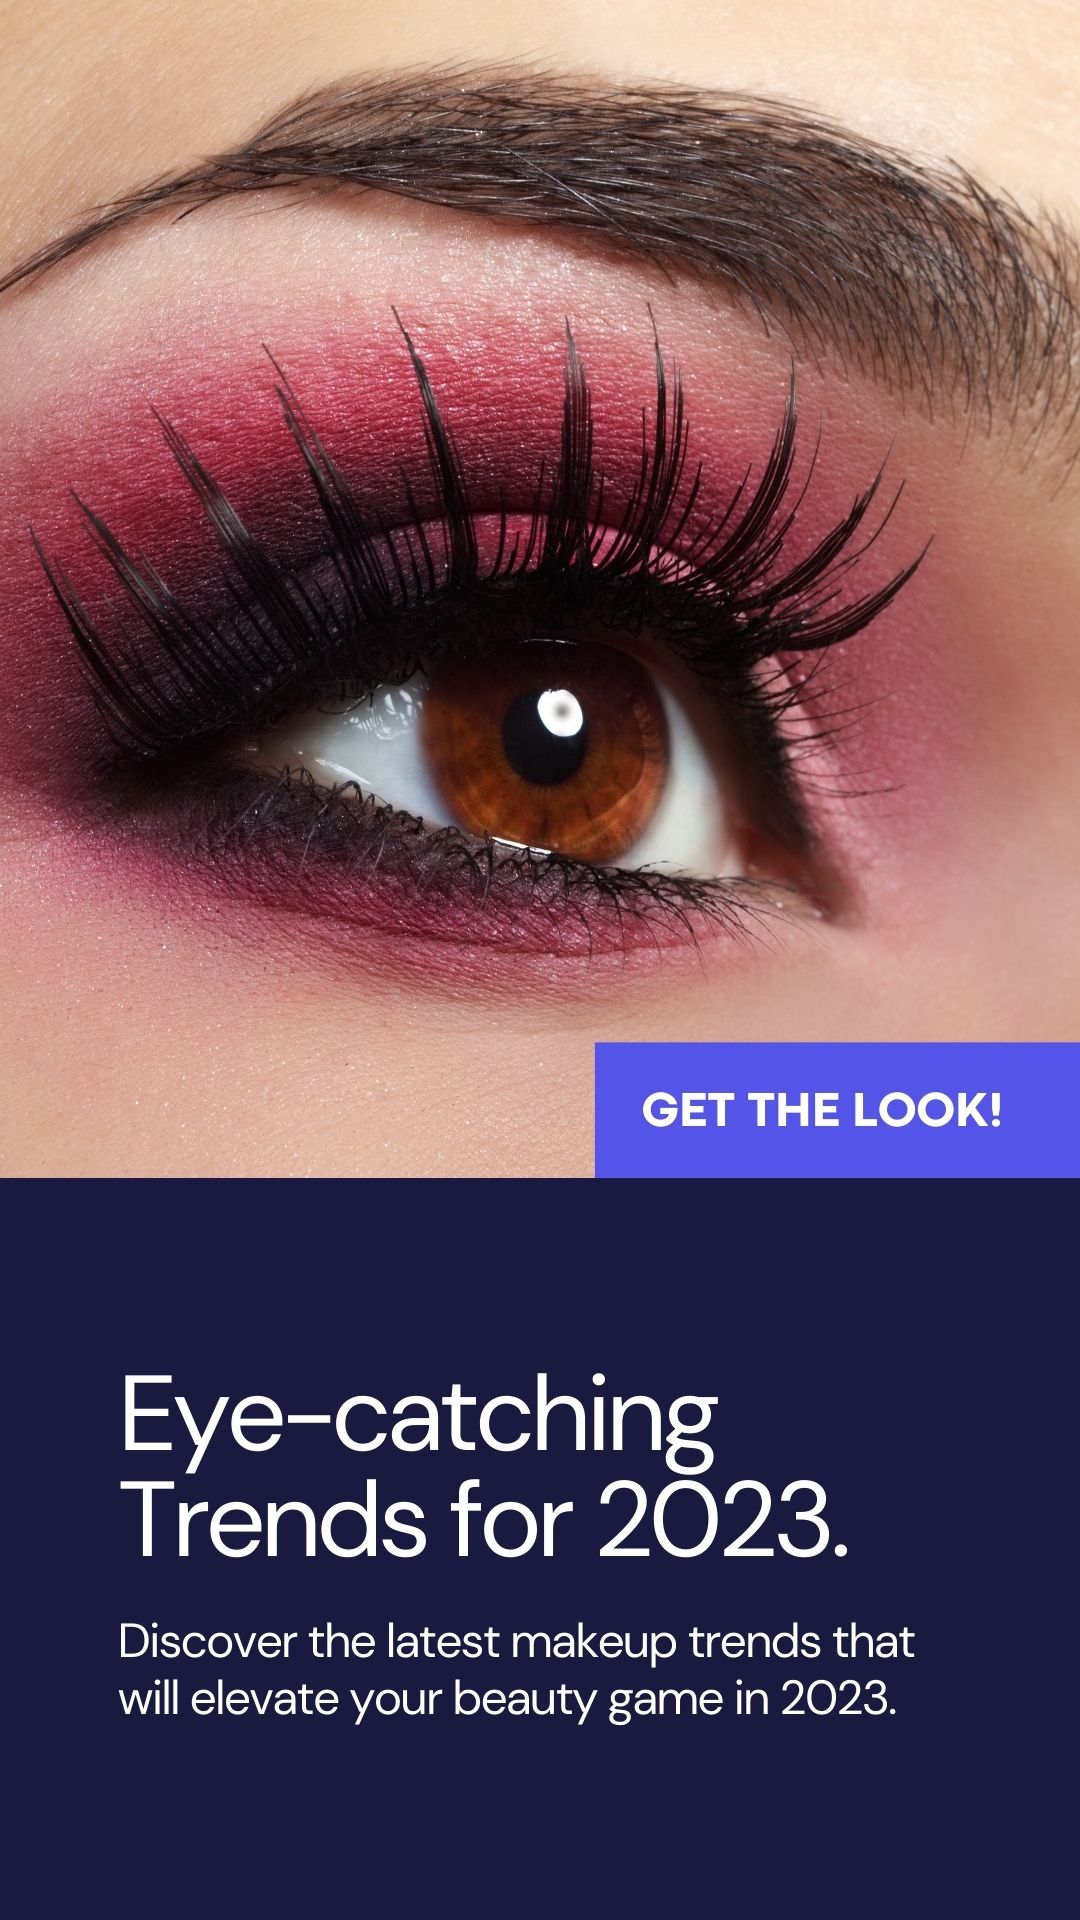 Simple Eye Makeup Trends in 2023